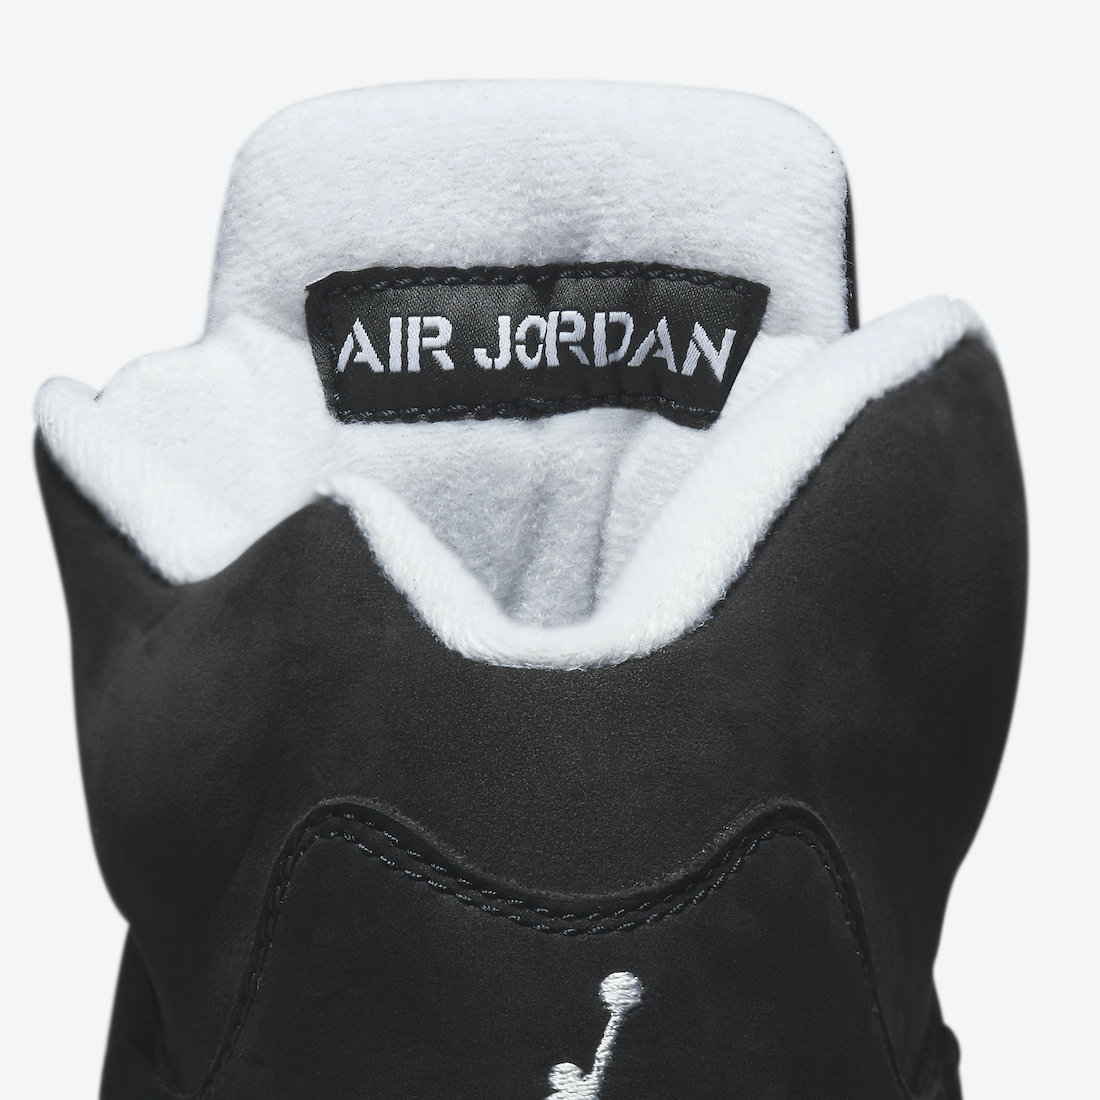 Air-Jordan-5-Oreo-2021-CT4838-011-Release-Date-9